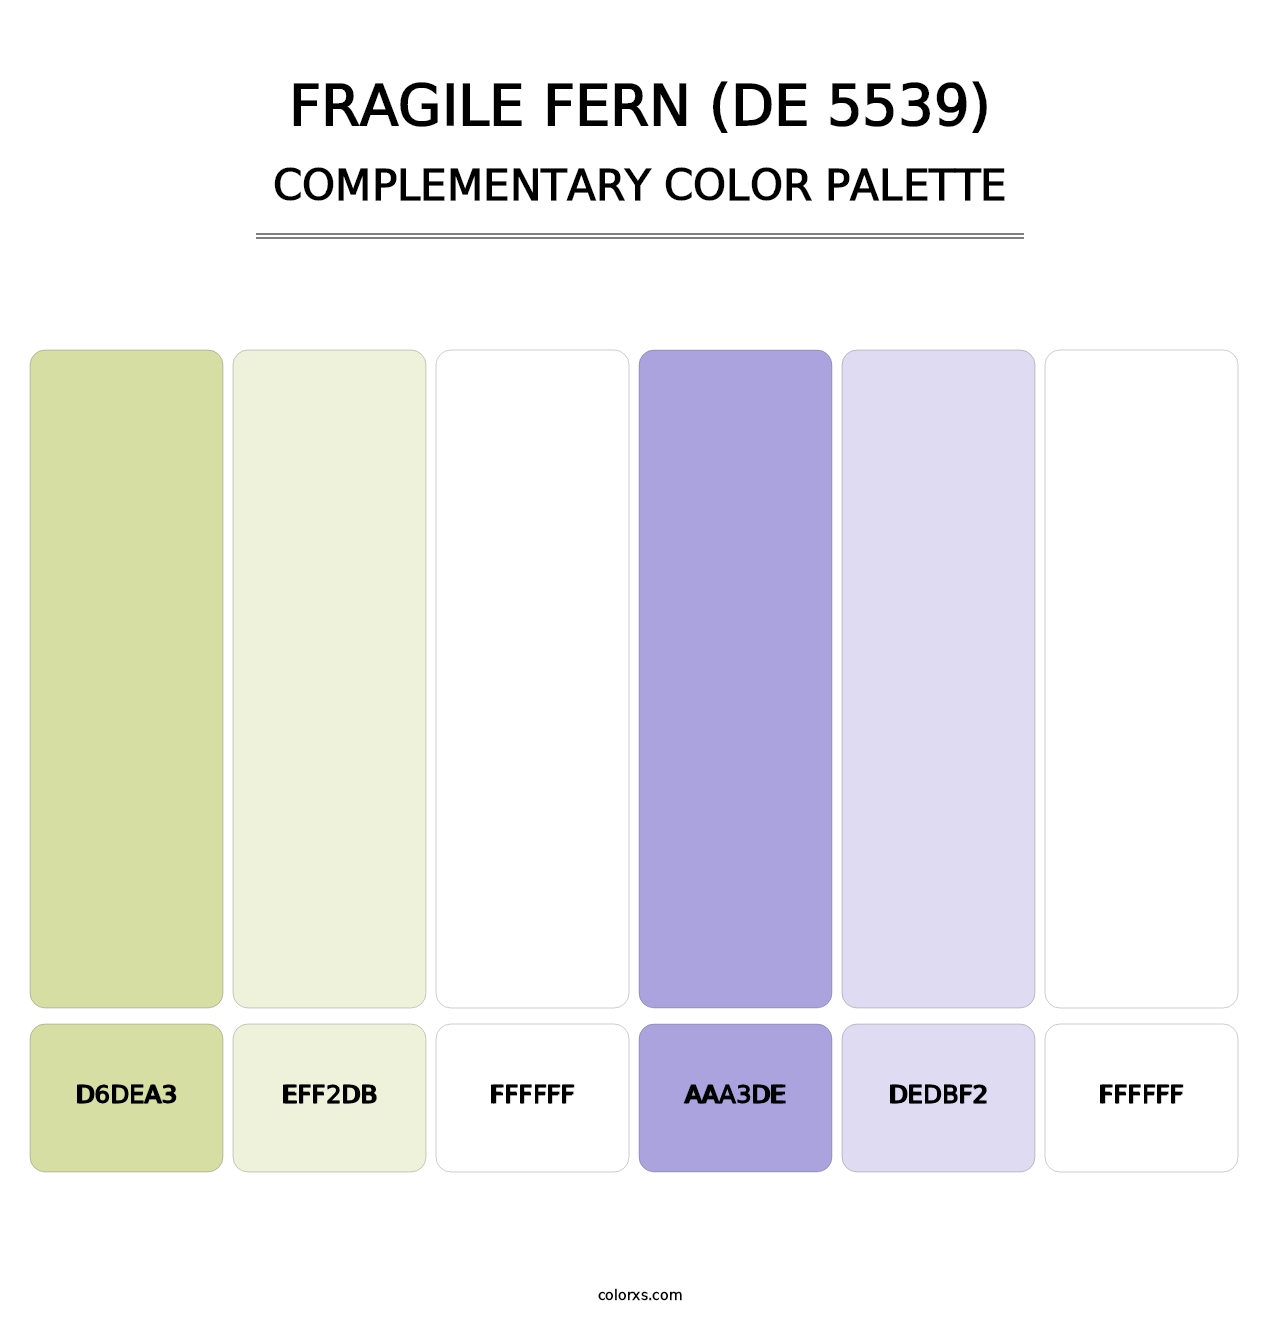 Fragile Fern (DE 5539) - Complementary Color Palette